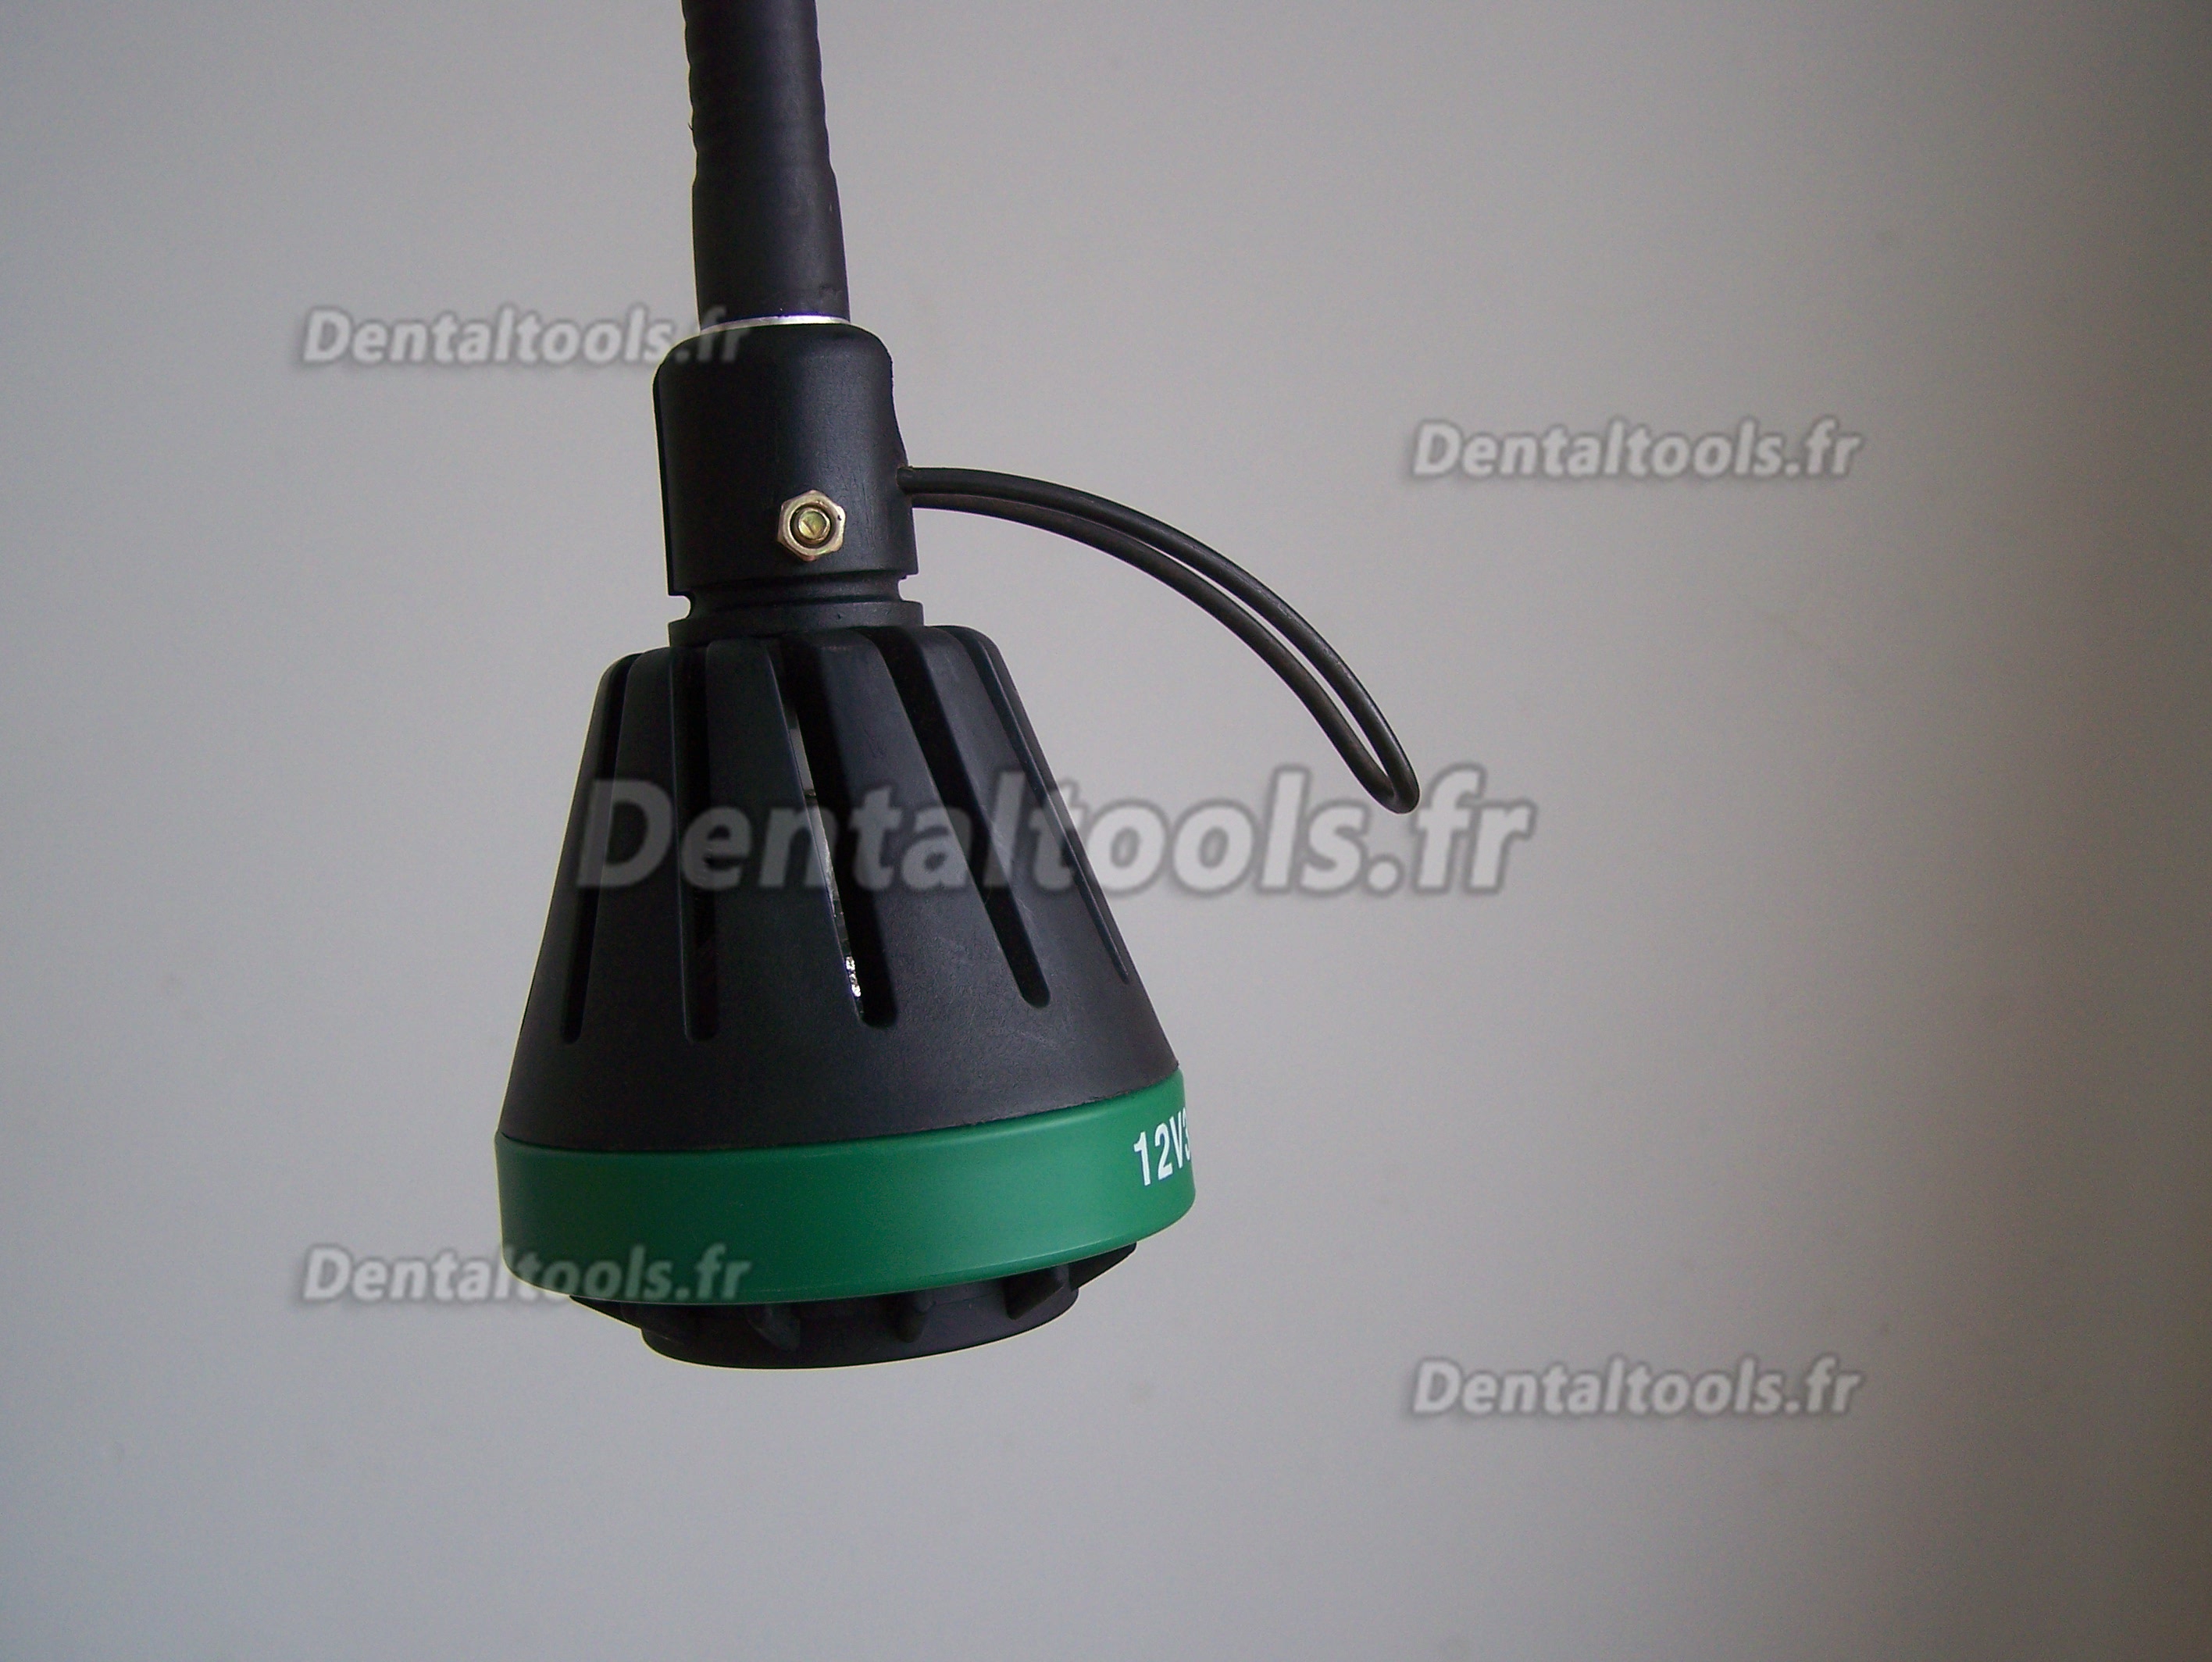 KWS® Lampe de diagnostic dentaire halogène KD-201B AC90-240V 35W